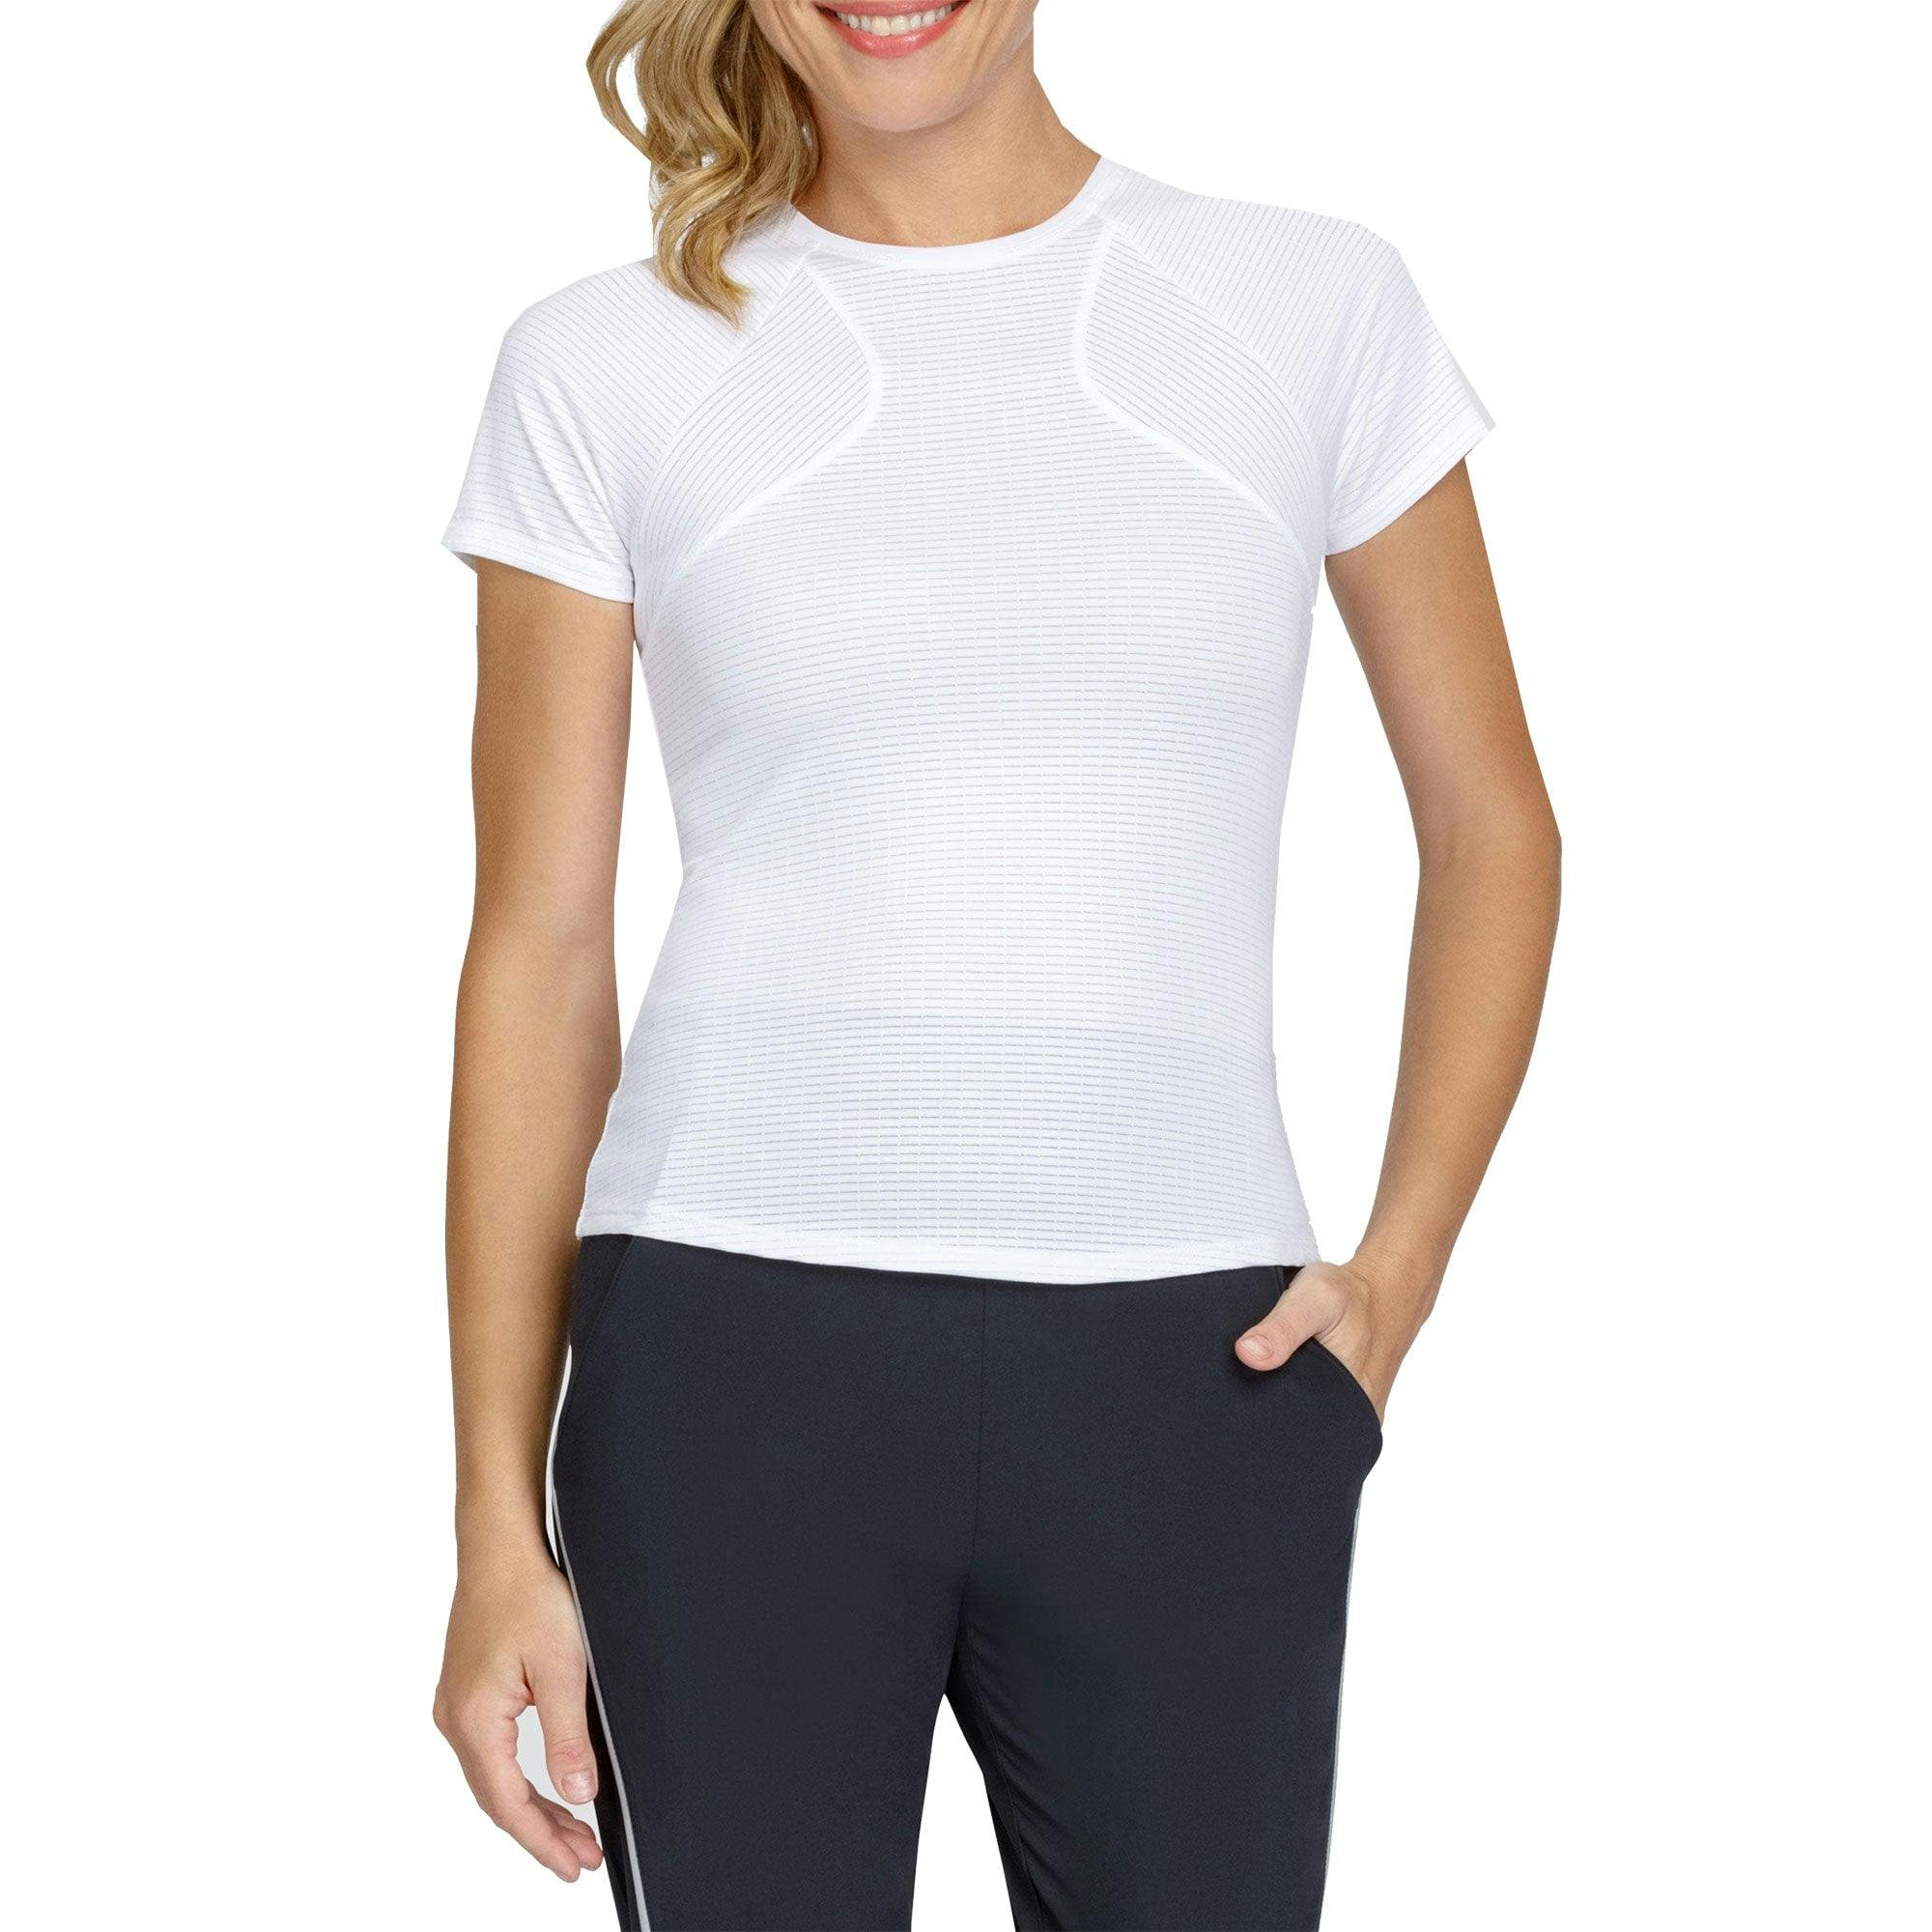 Tail Opal Chalk Womens Short Sleeve Tennis Shirt - CHALK 120 / S